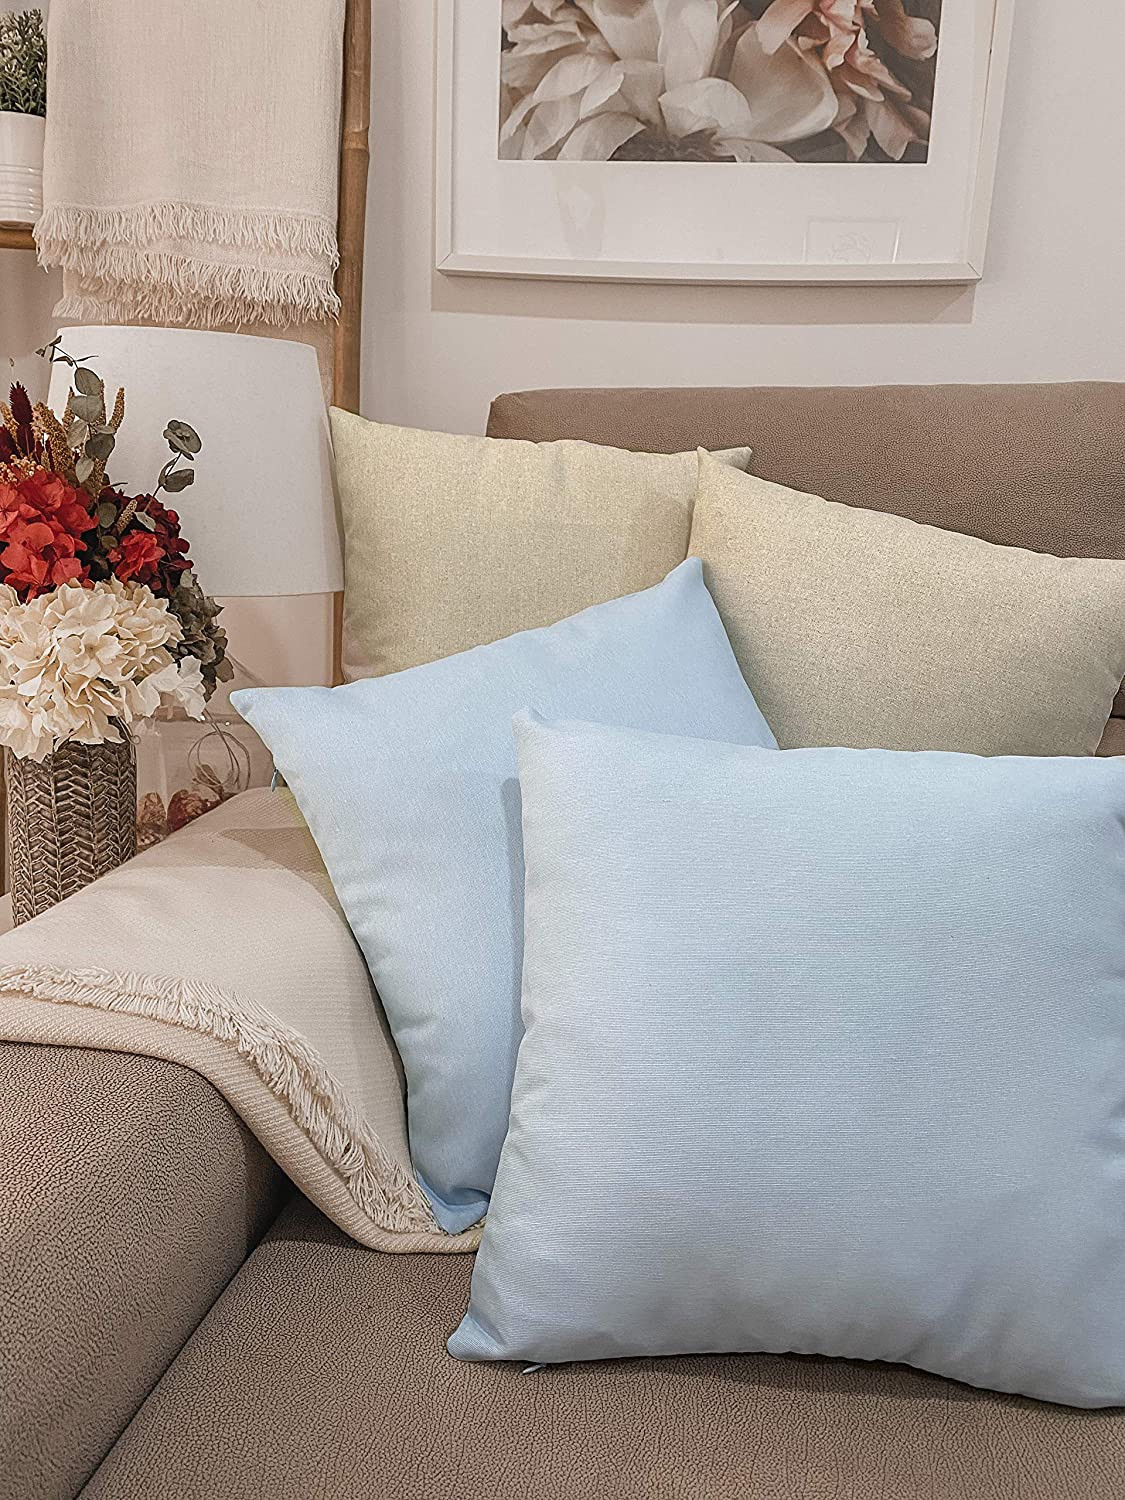 Pak 4 zachte linnen effect sofa grote decoratieve kussen voor woonkamer. Stijlvol kussen in verschillende maten (lichtblauw, 40x40cm).